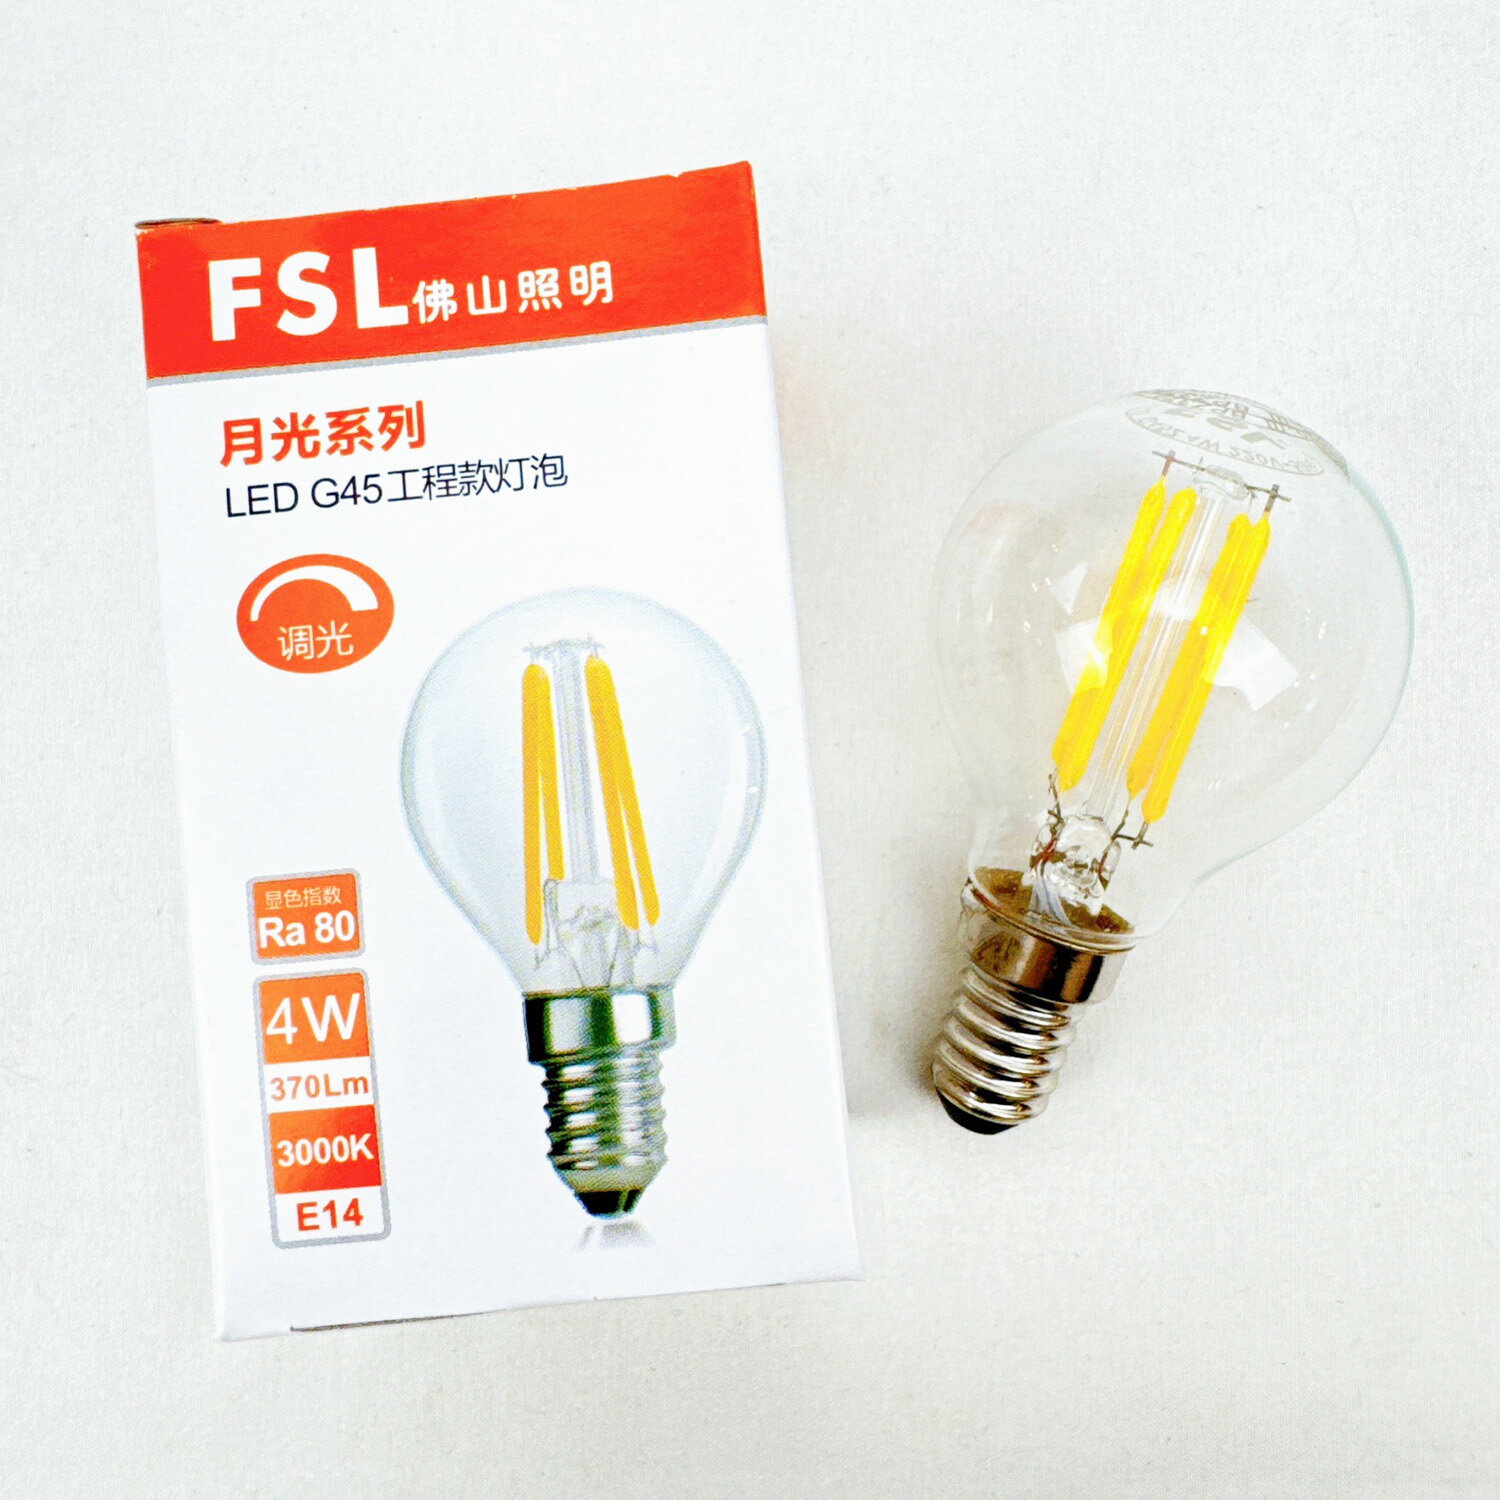 FSL 佛山照明 LED 4W 暖光 G45 燈泡 E14 220V 可調光